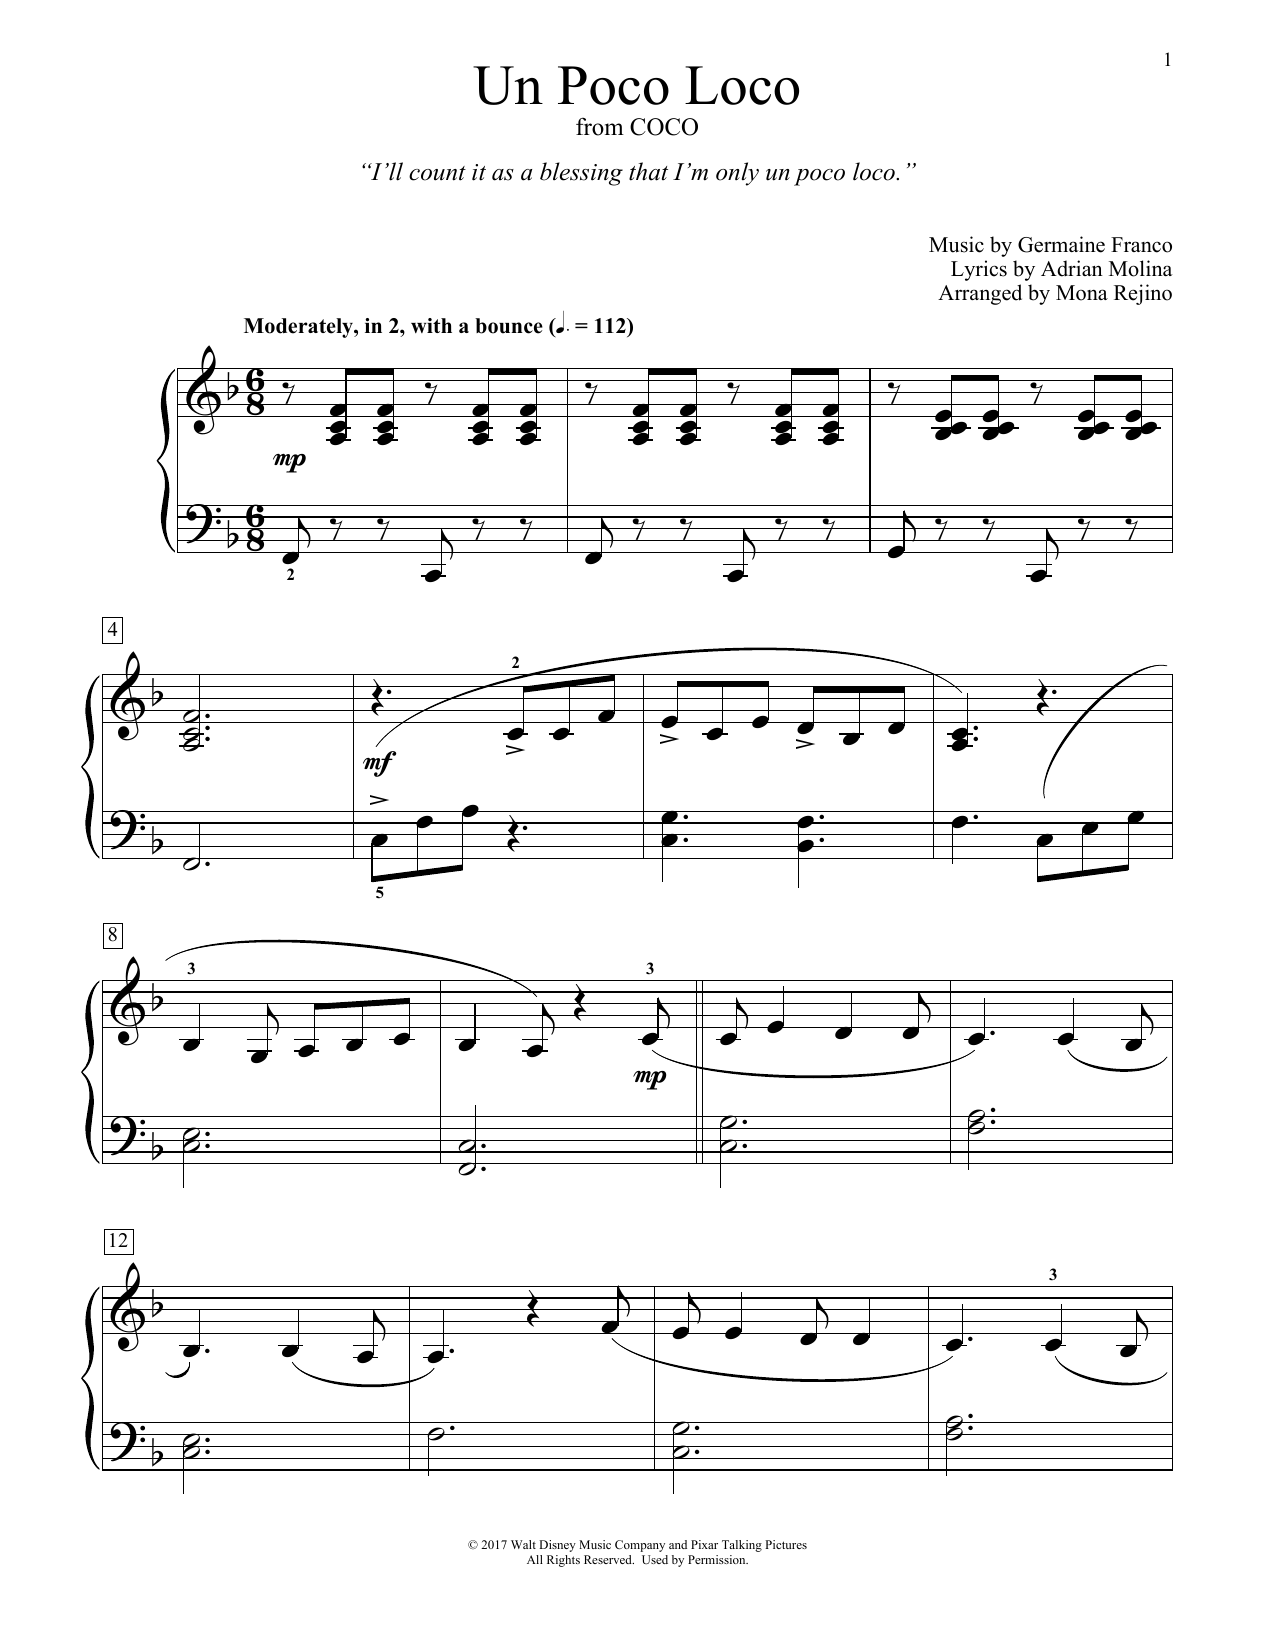 Un Poco Loco (from Coco) (arr. Mona Rejino) (Educational Piano) von Germaine Franco & Adrian Molina